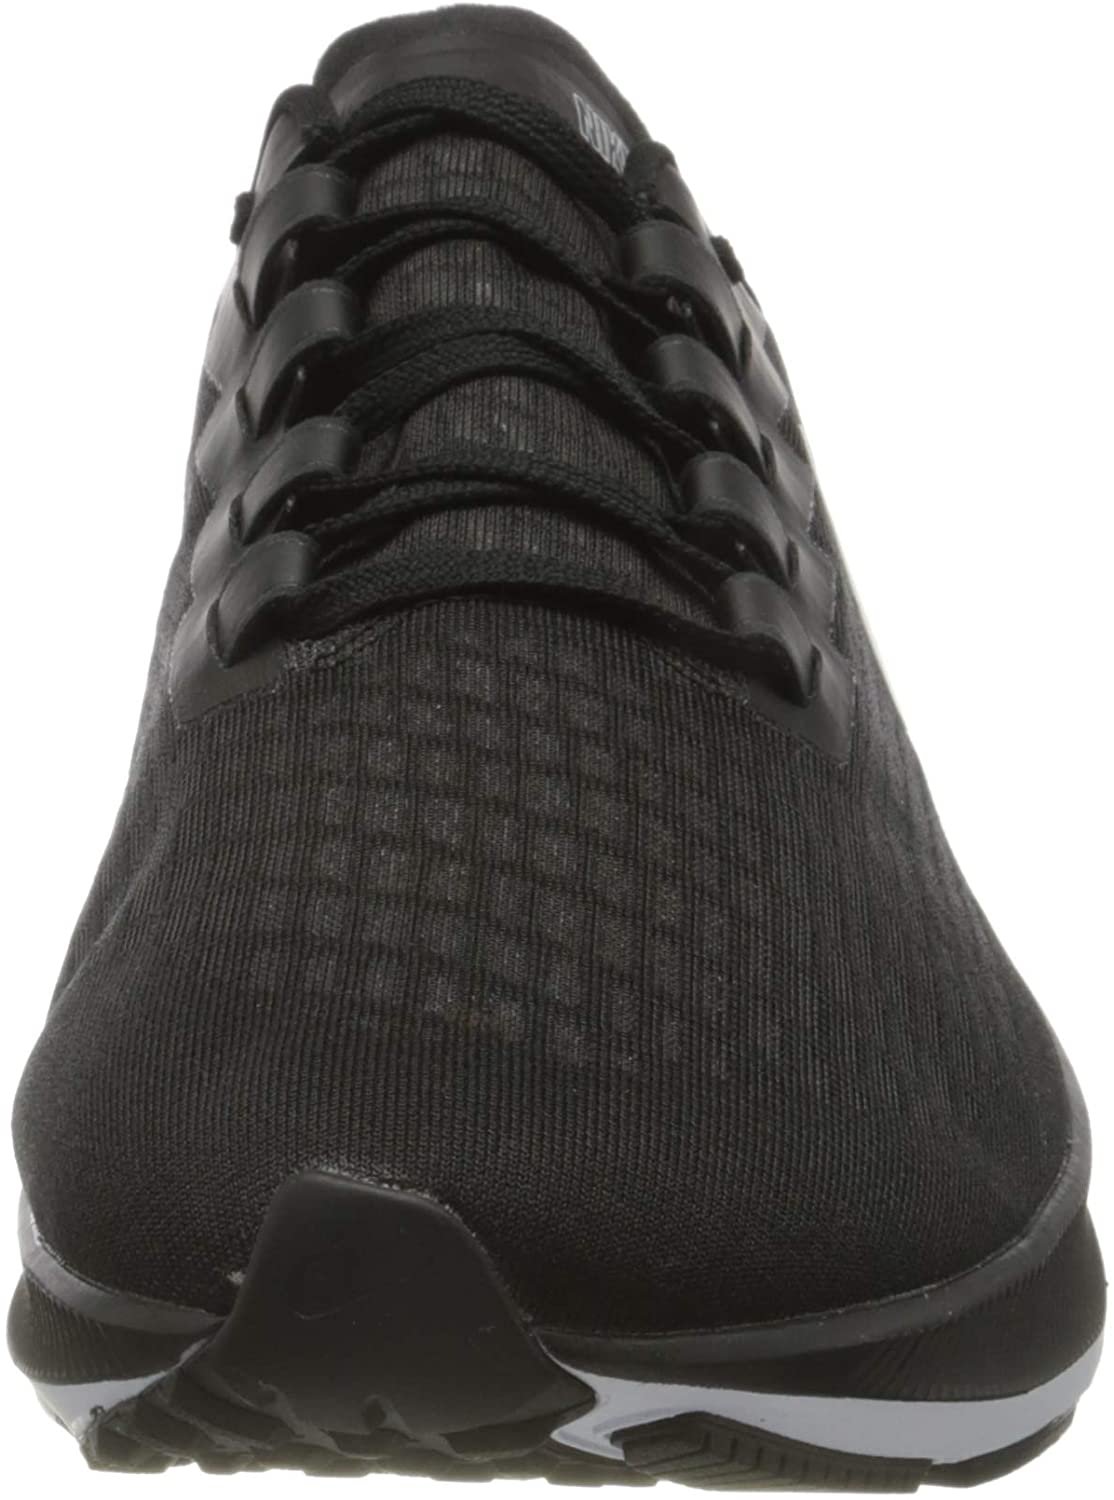 Nike Air Zoom Pegasus 37 Mens Running Casual Shoe Bq9646-002 Size 11.5 Black/White - image 2 of 7